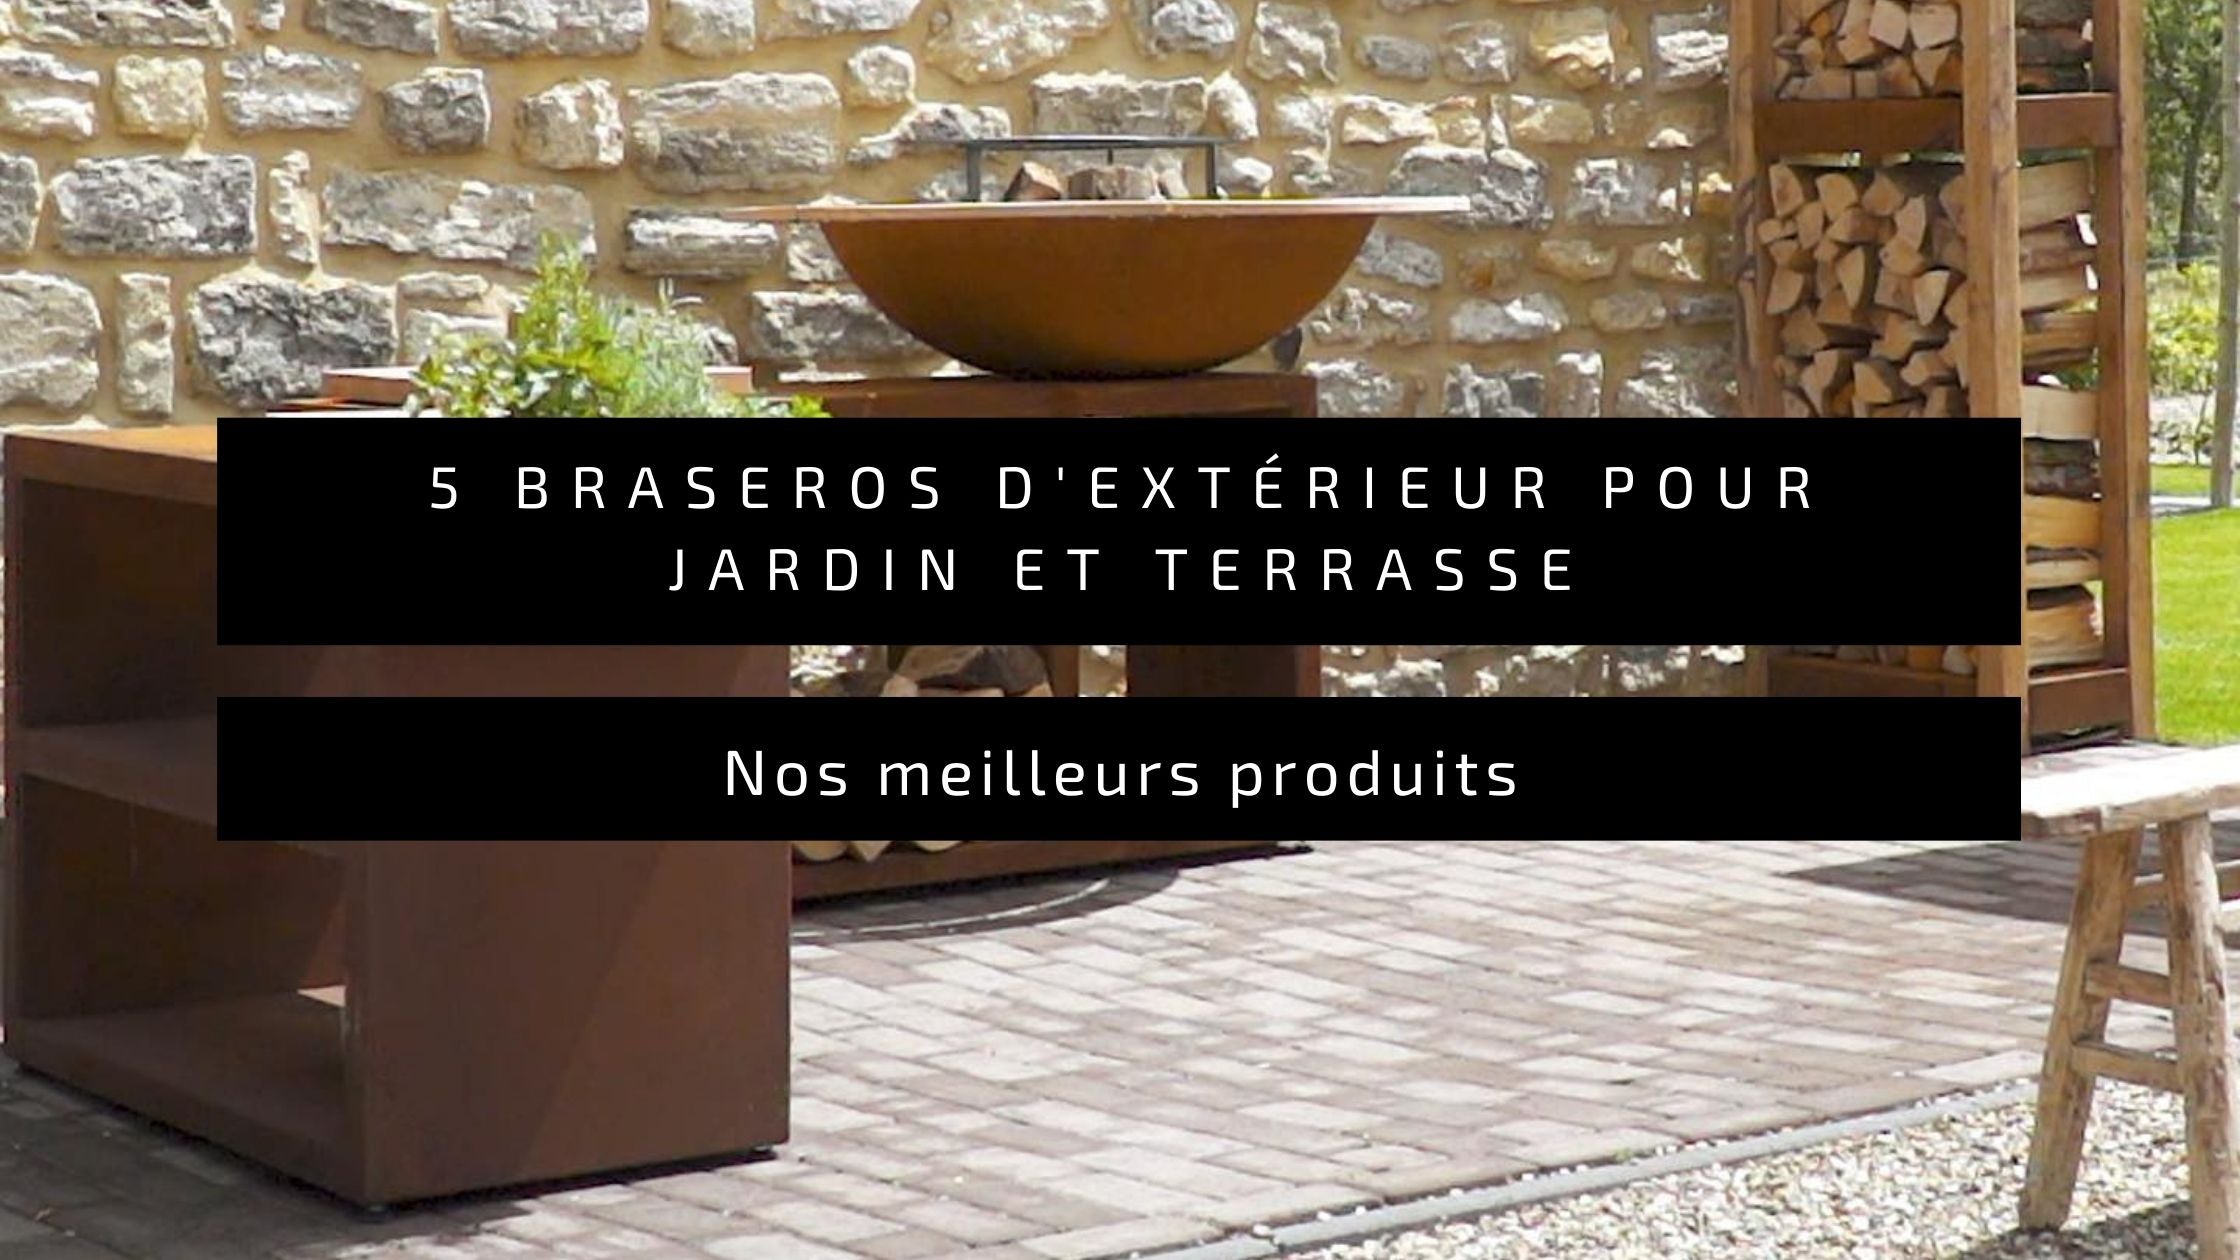 Brasero design de jardin / interieur : Metal ancien ou fonte